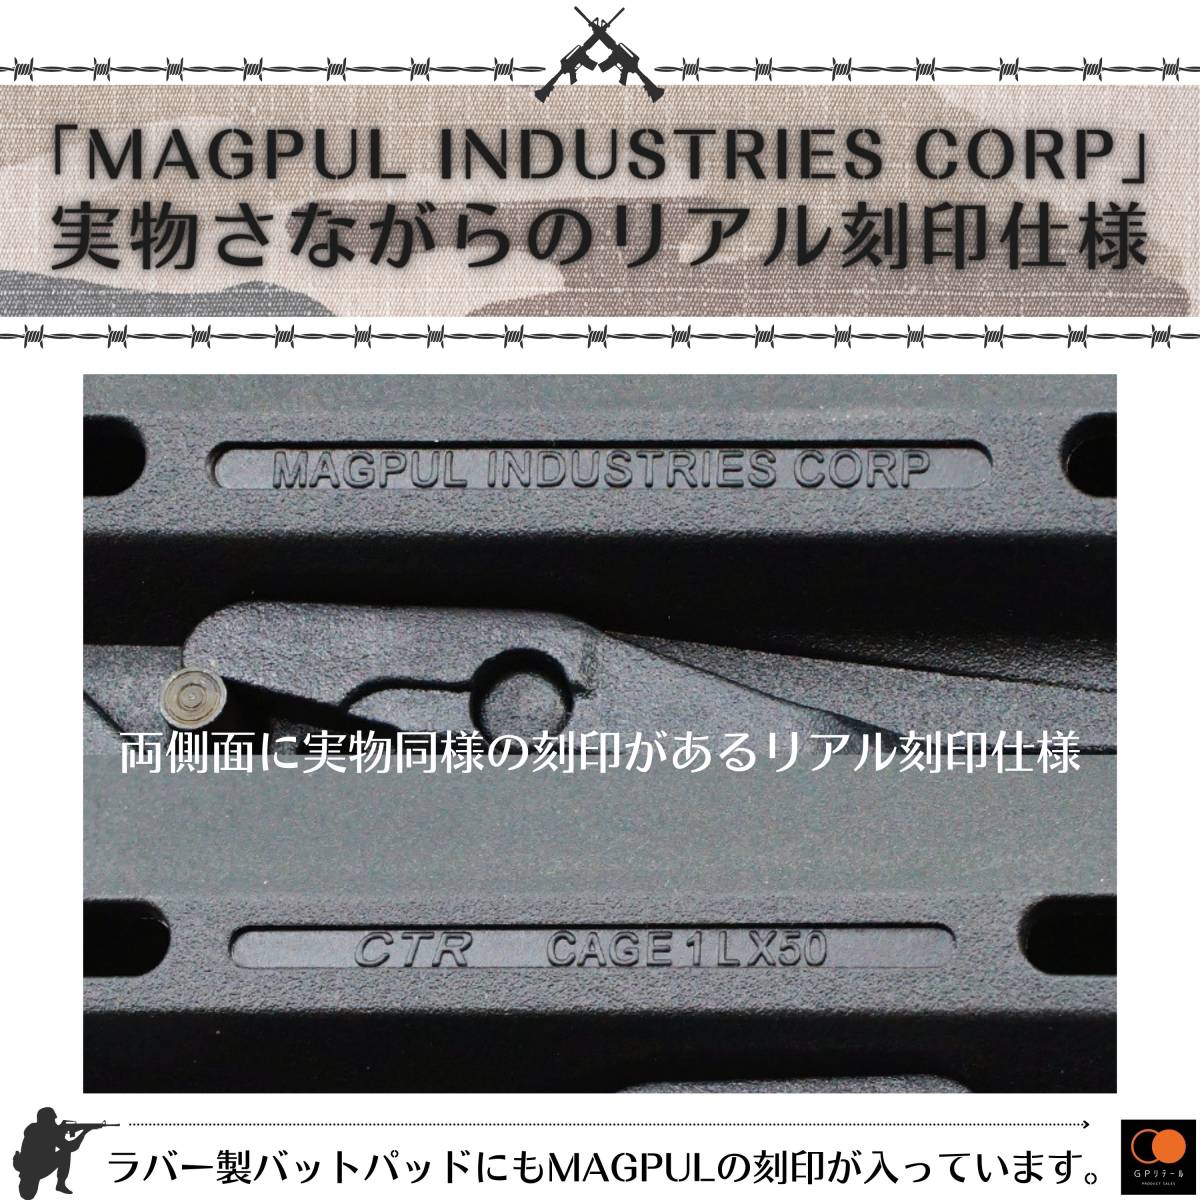 GPリテール マグプルタイプ リアル刻印 CTRカービンストック M4 M16等に対応 ラバー製バットパッドにも刻印 (0.3インチ, オリーブドラブ)の画像2